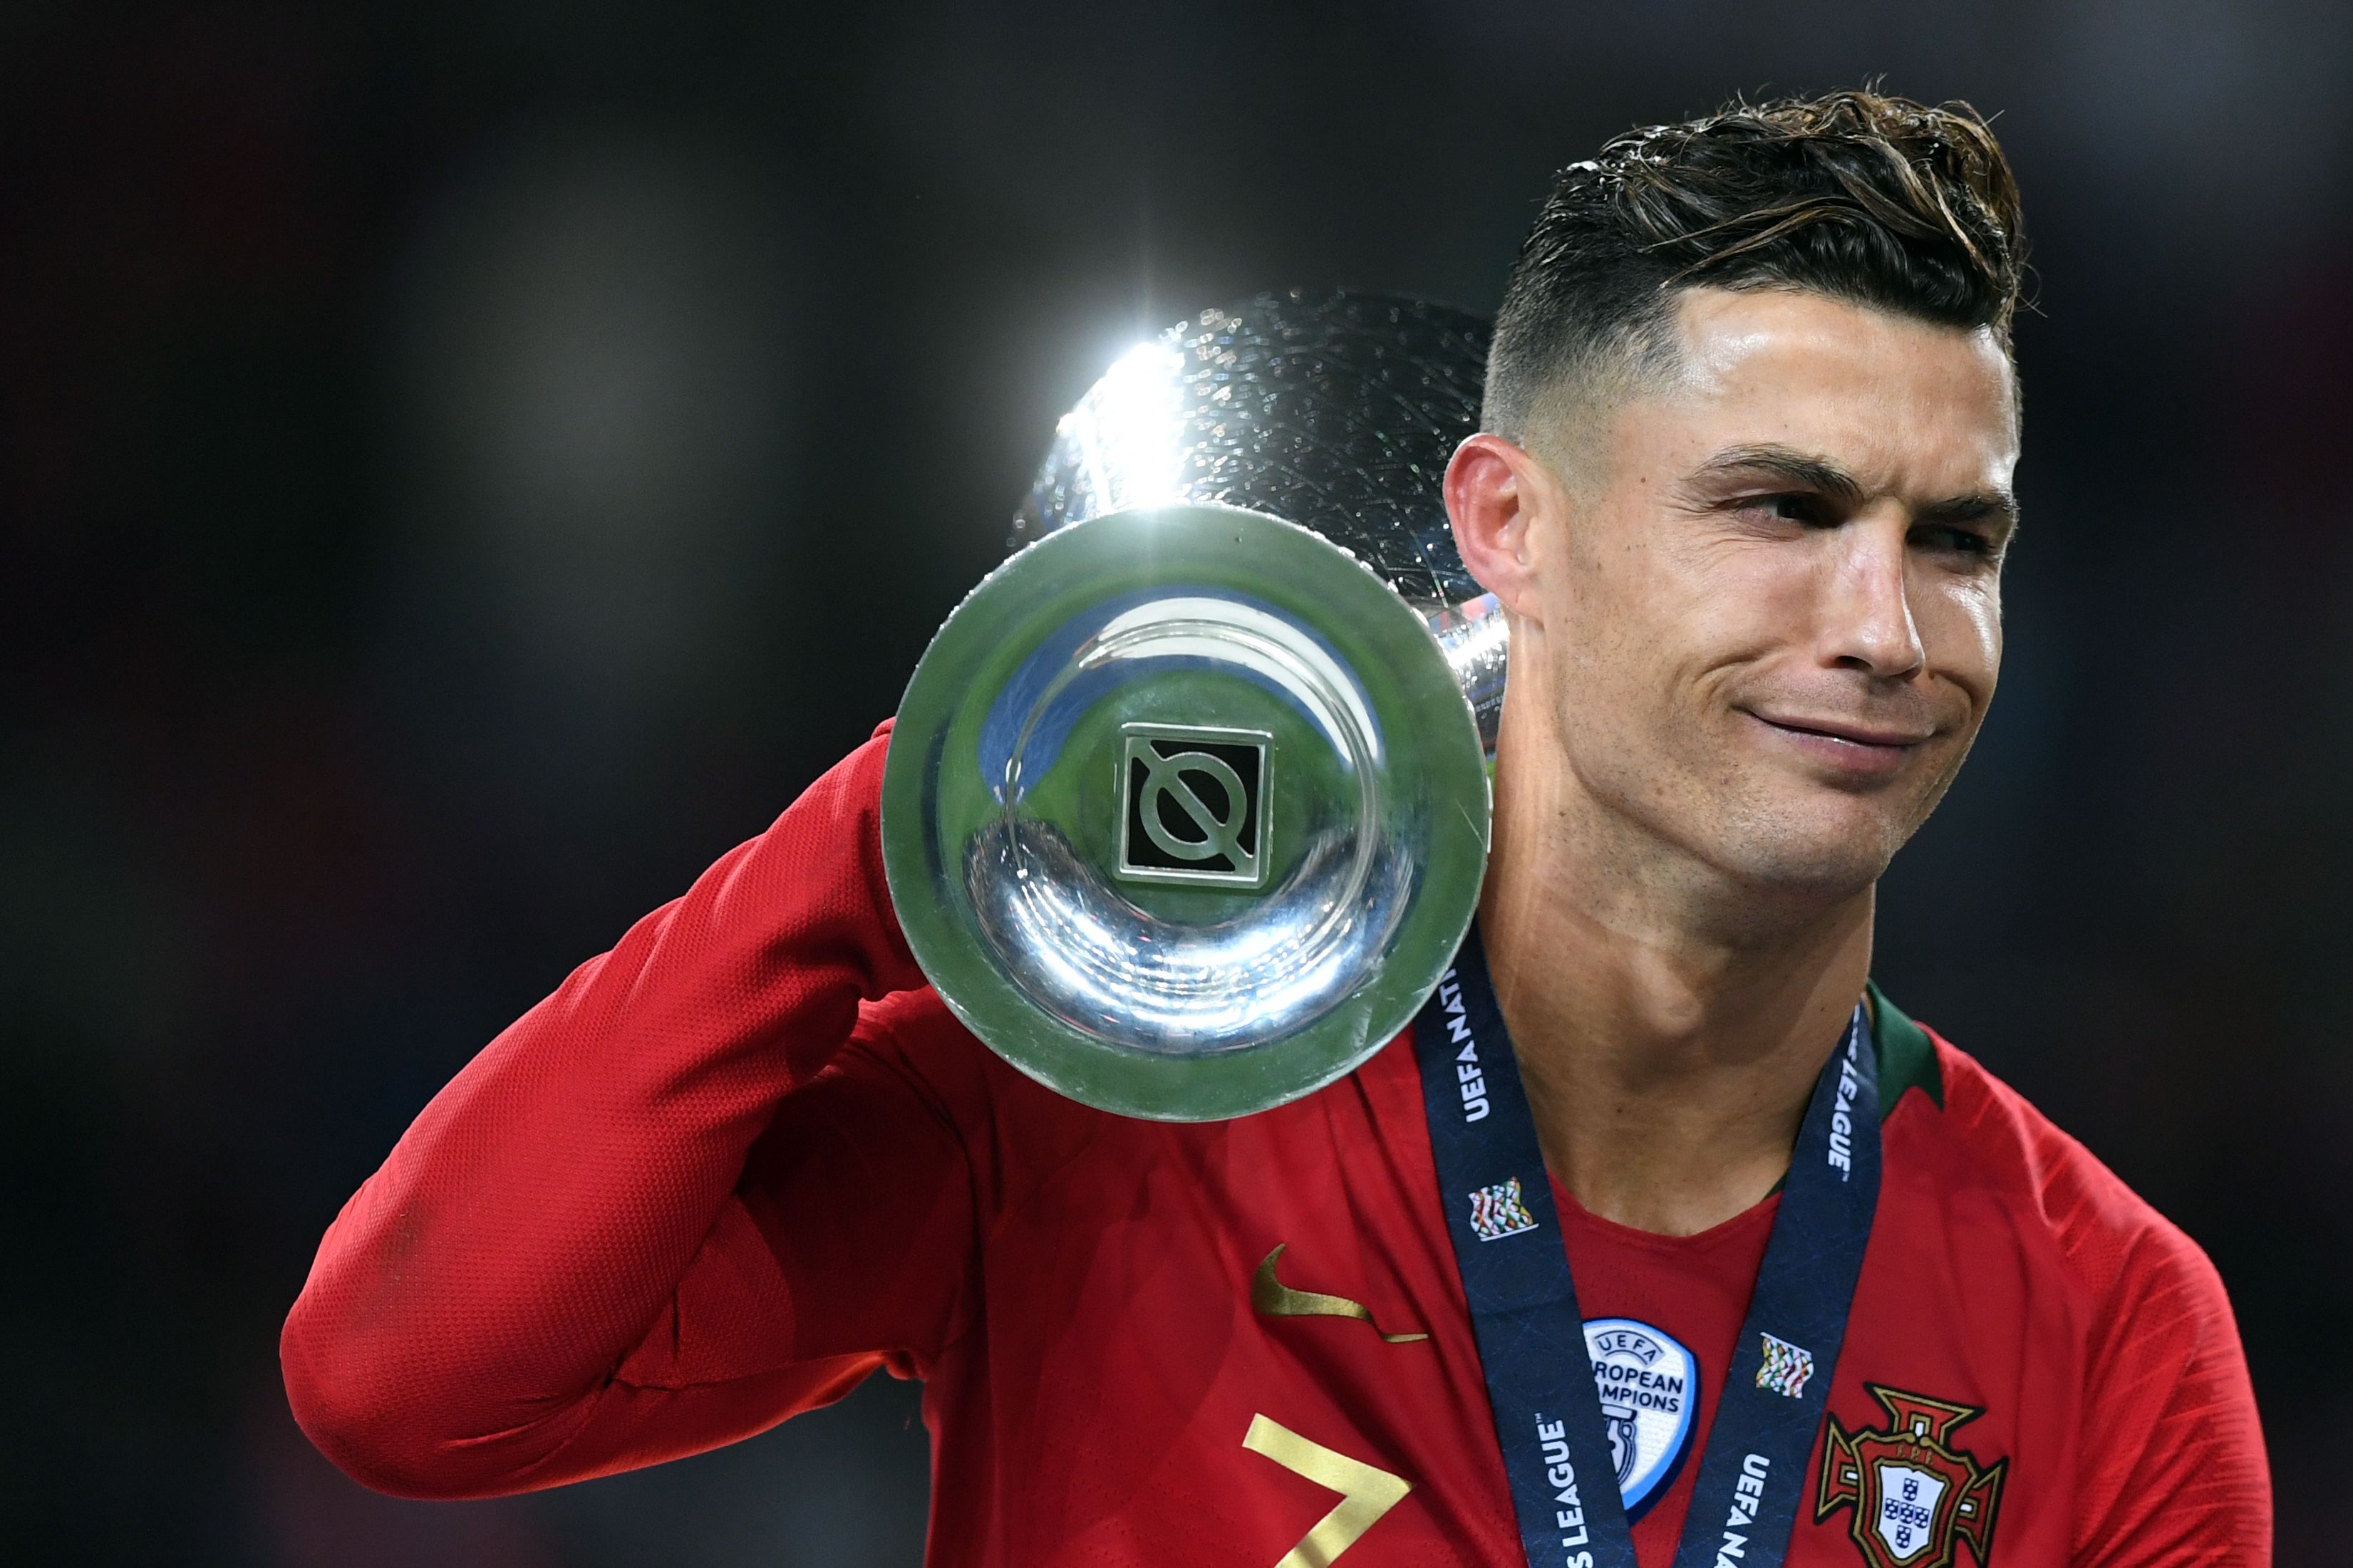 Cristiano Ronaldo Quiere “intentar” Volver A Ganar La Eurocopa En 2020